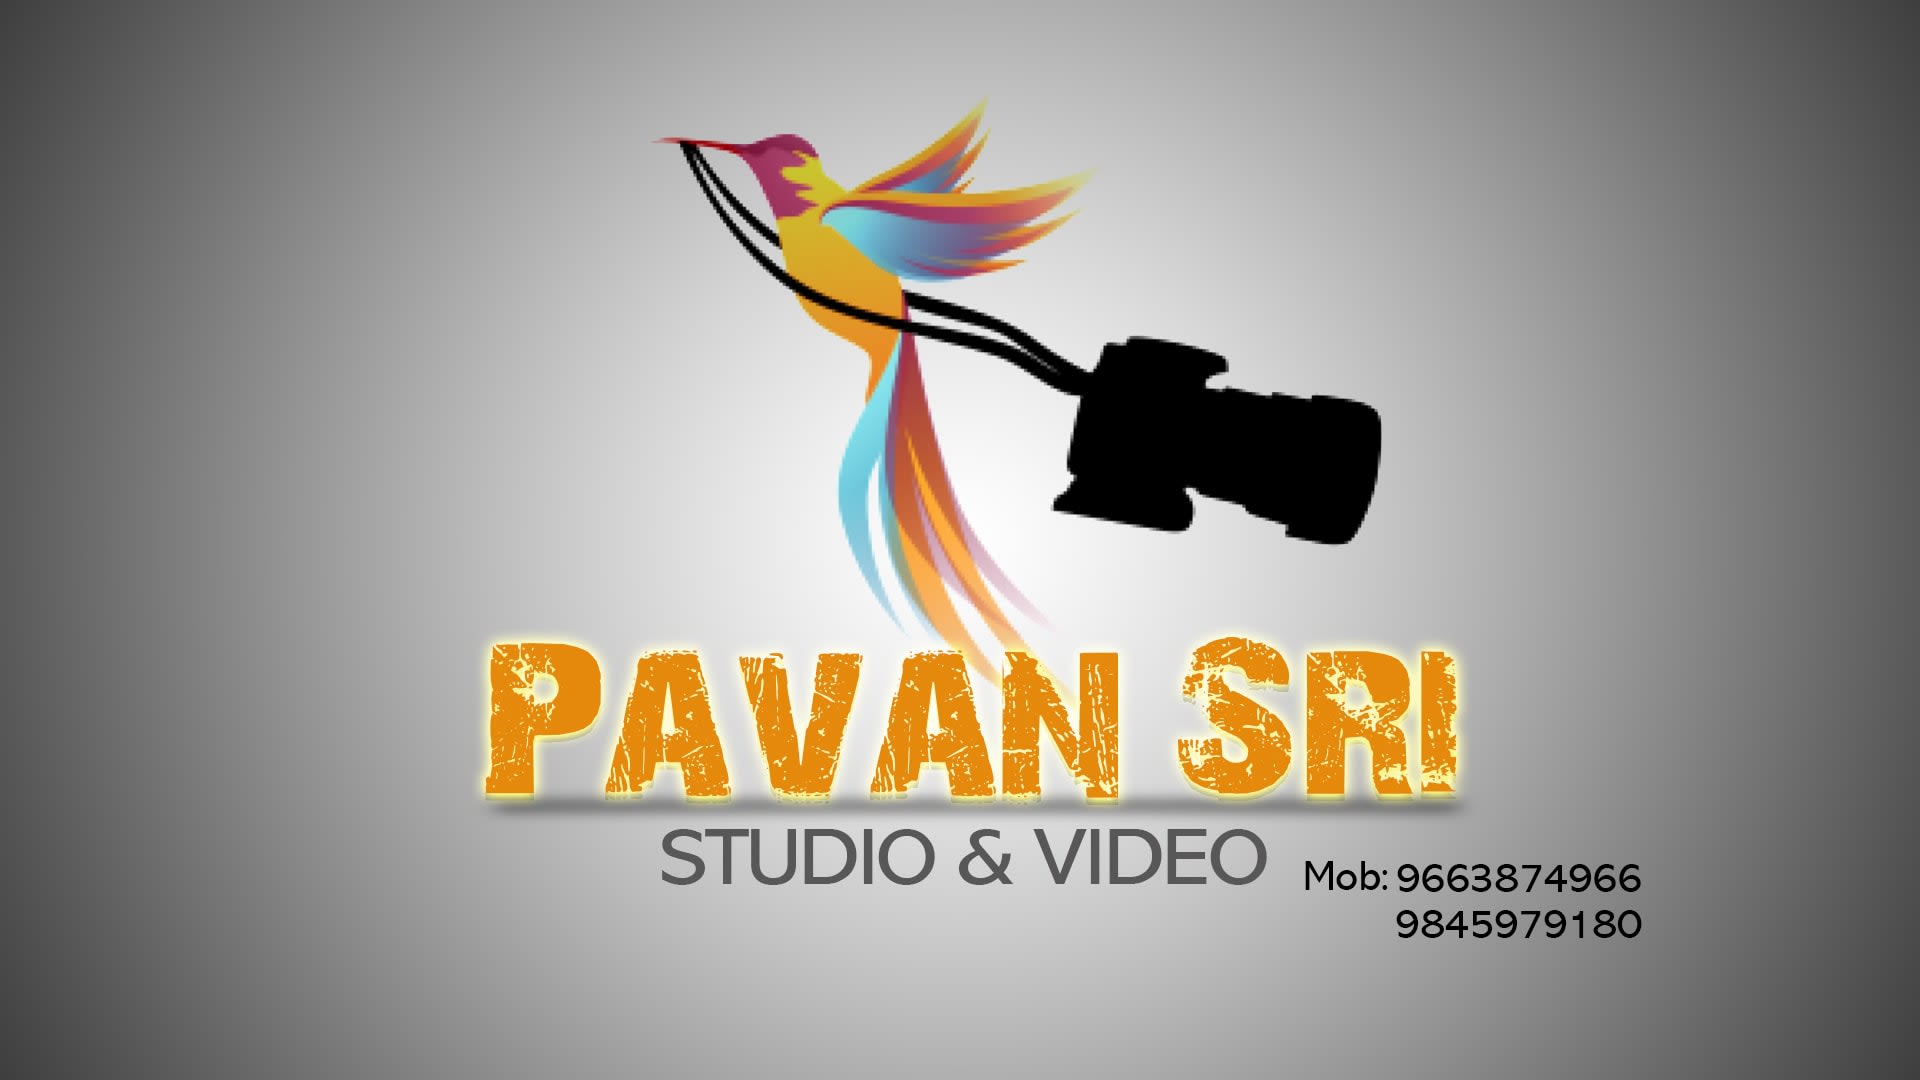 Pavan Sri Studio & Video